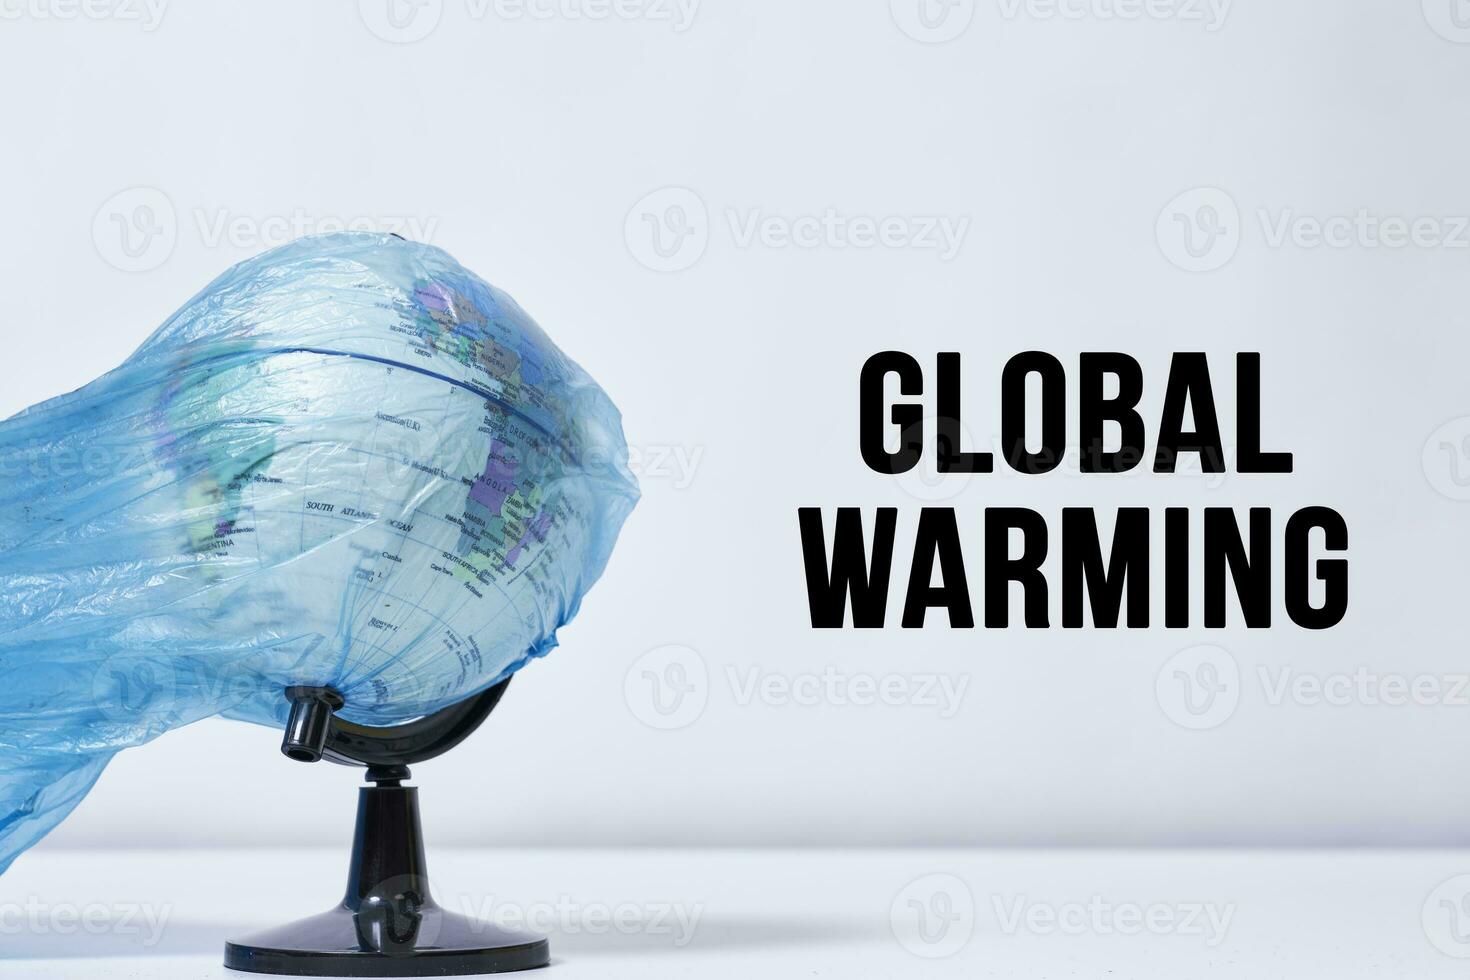 Global warming - the globe in plastic bag photo